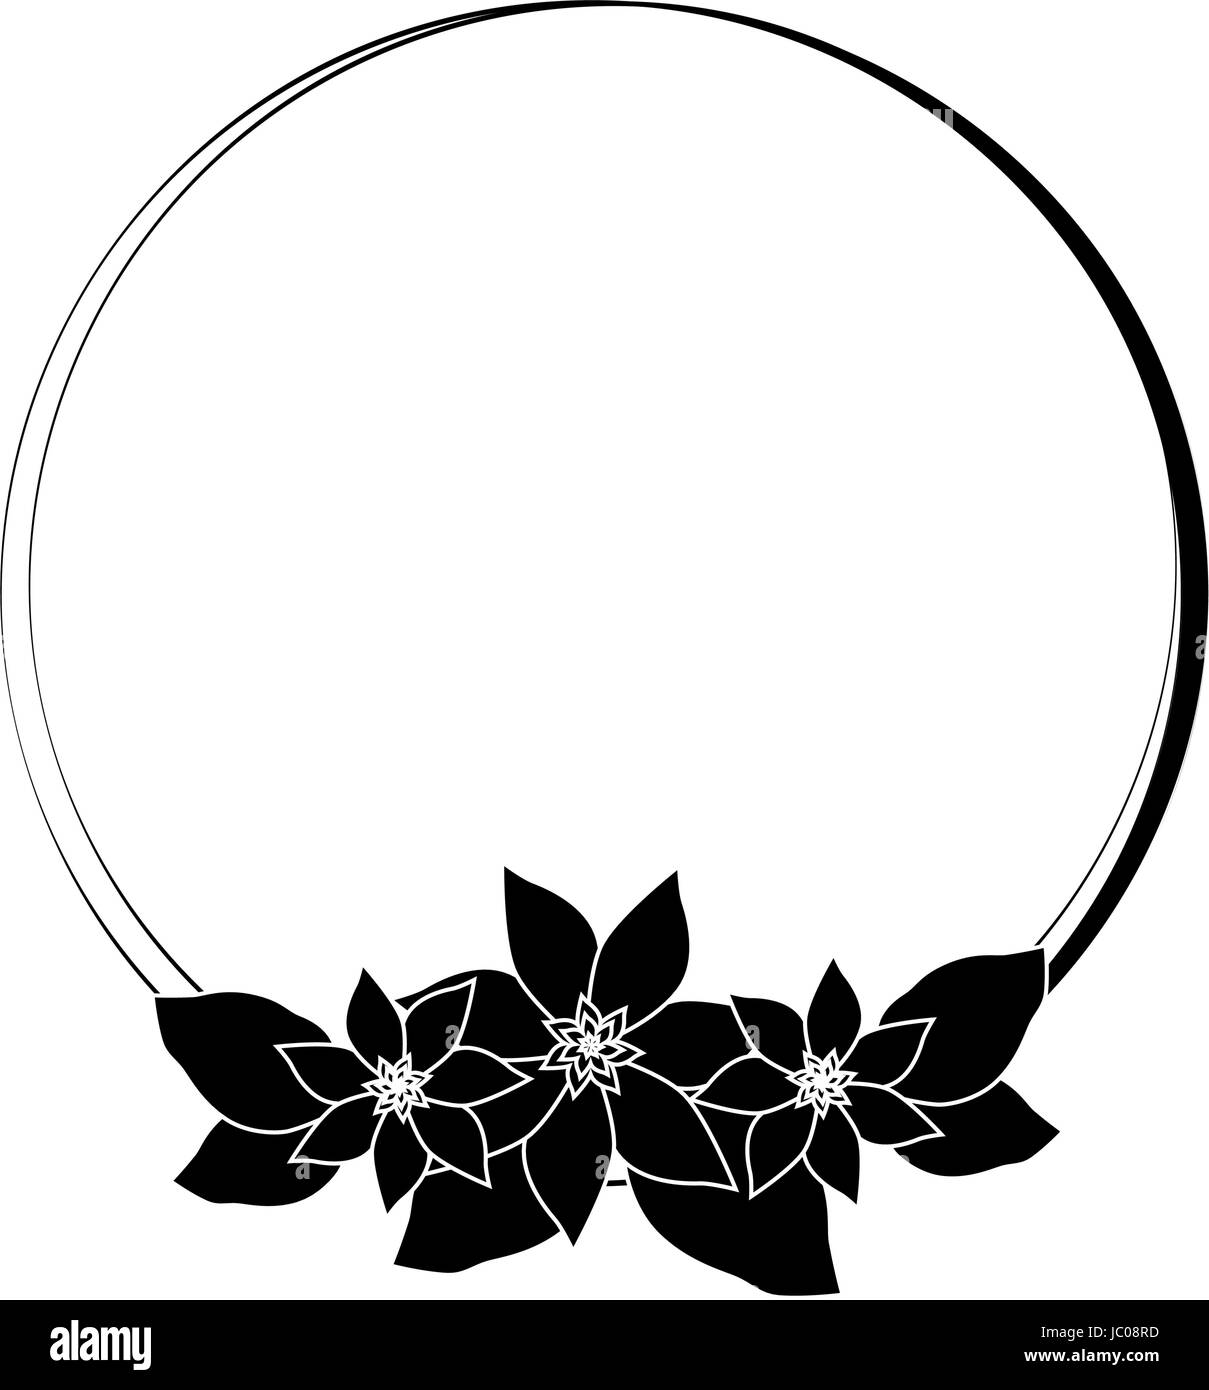 Cadre rond avec des fleurs Image Vectorielle Stock - Alamy